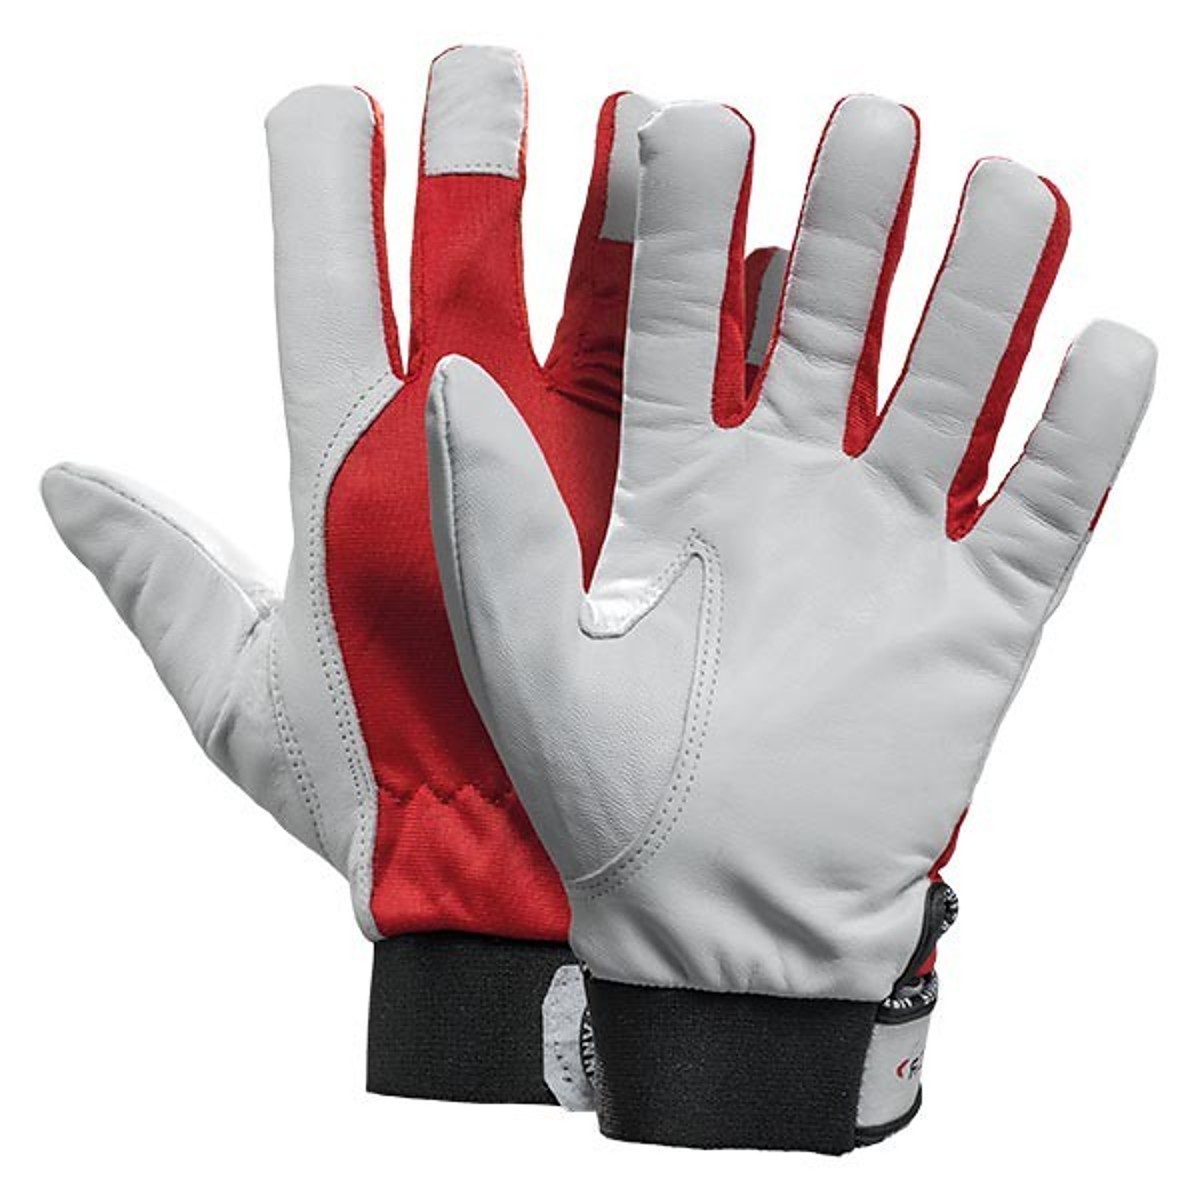 Pfanner StretchFlex® thermal gloves